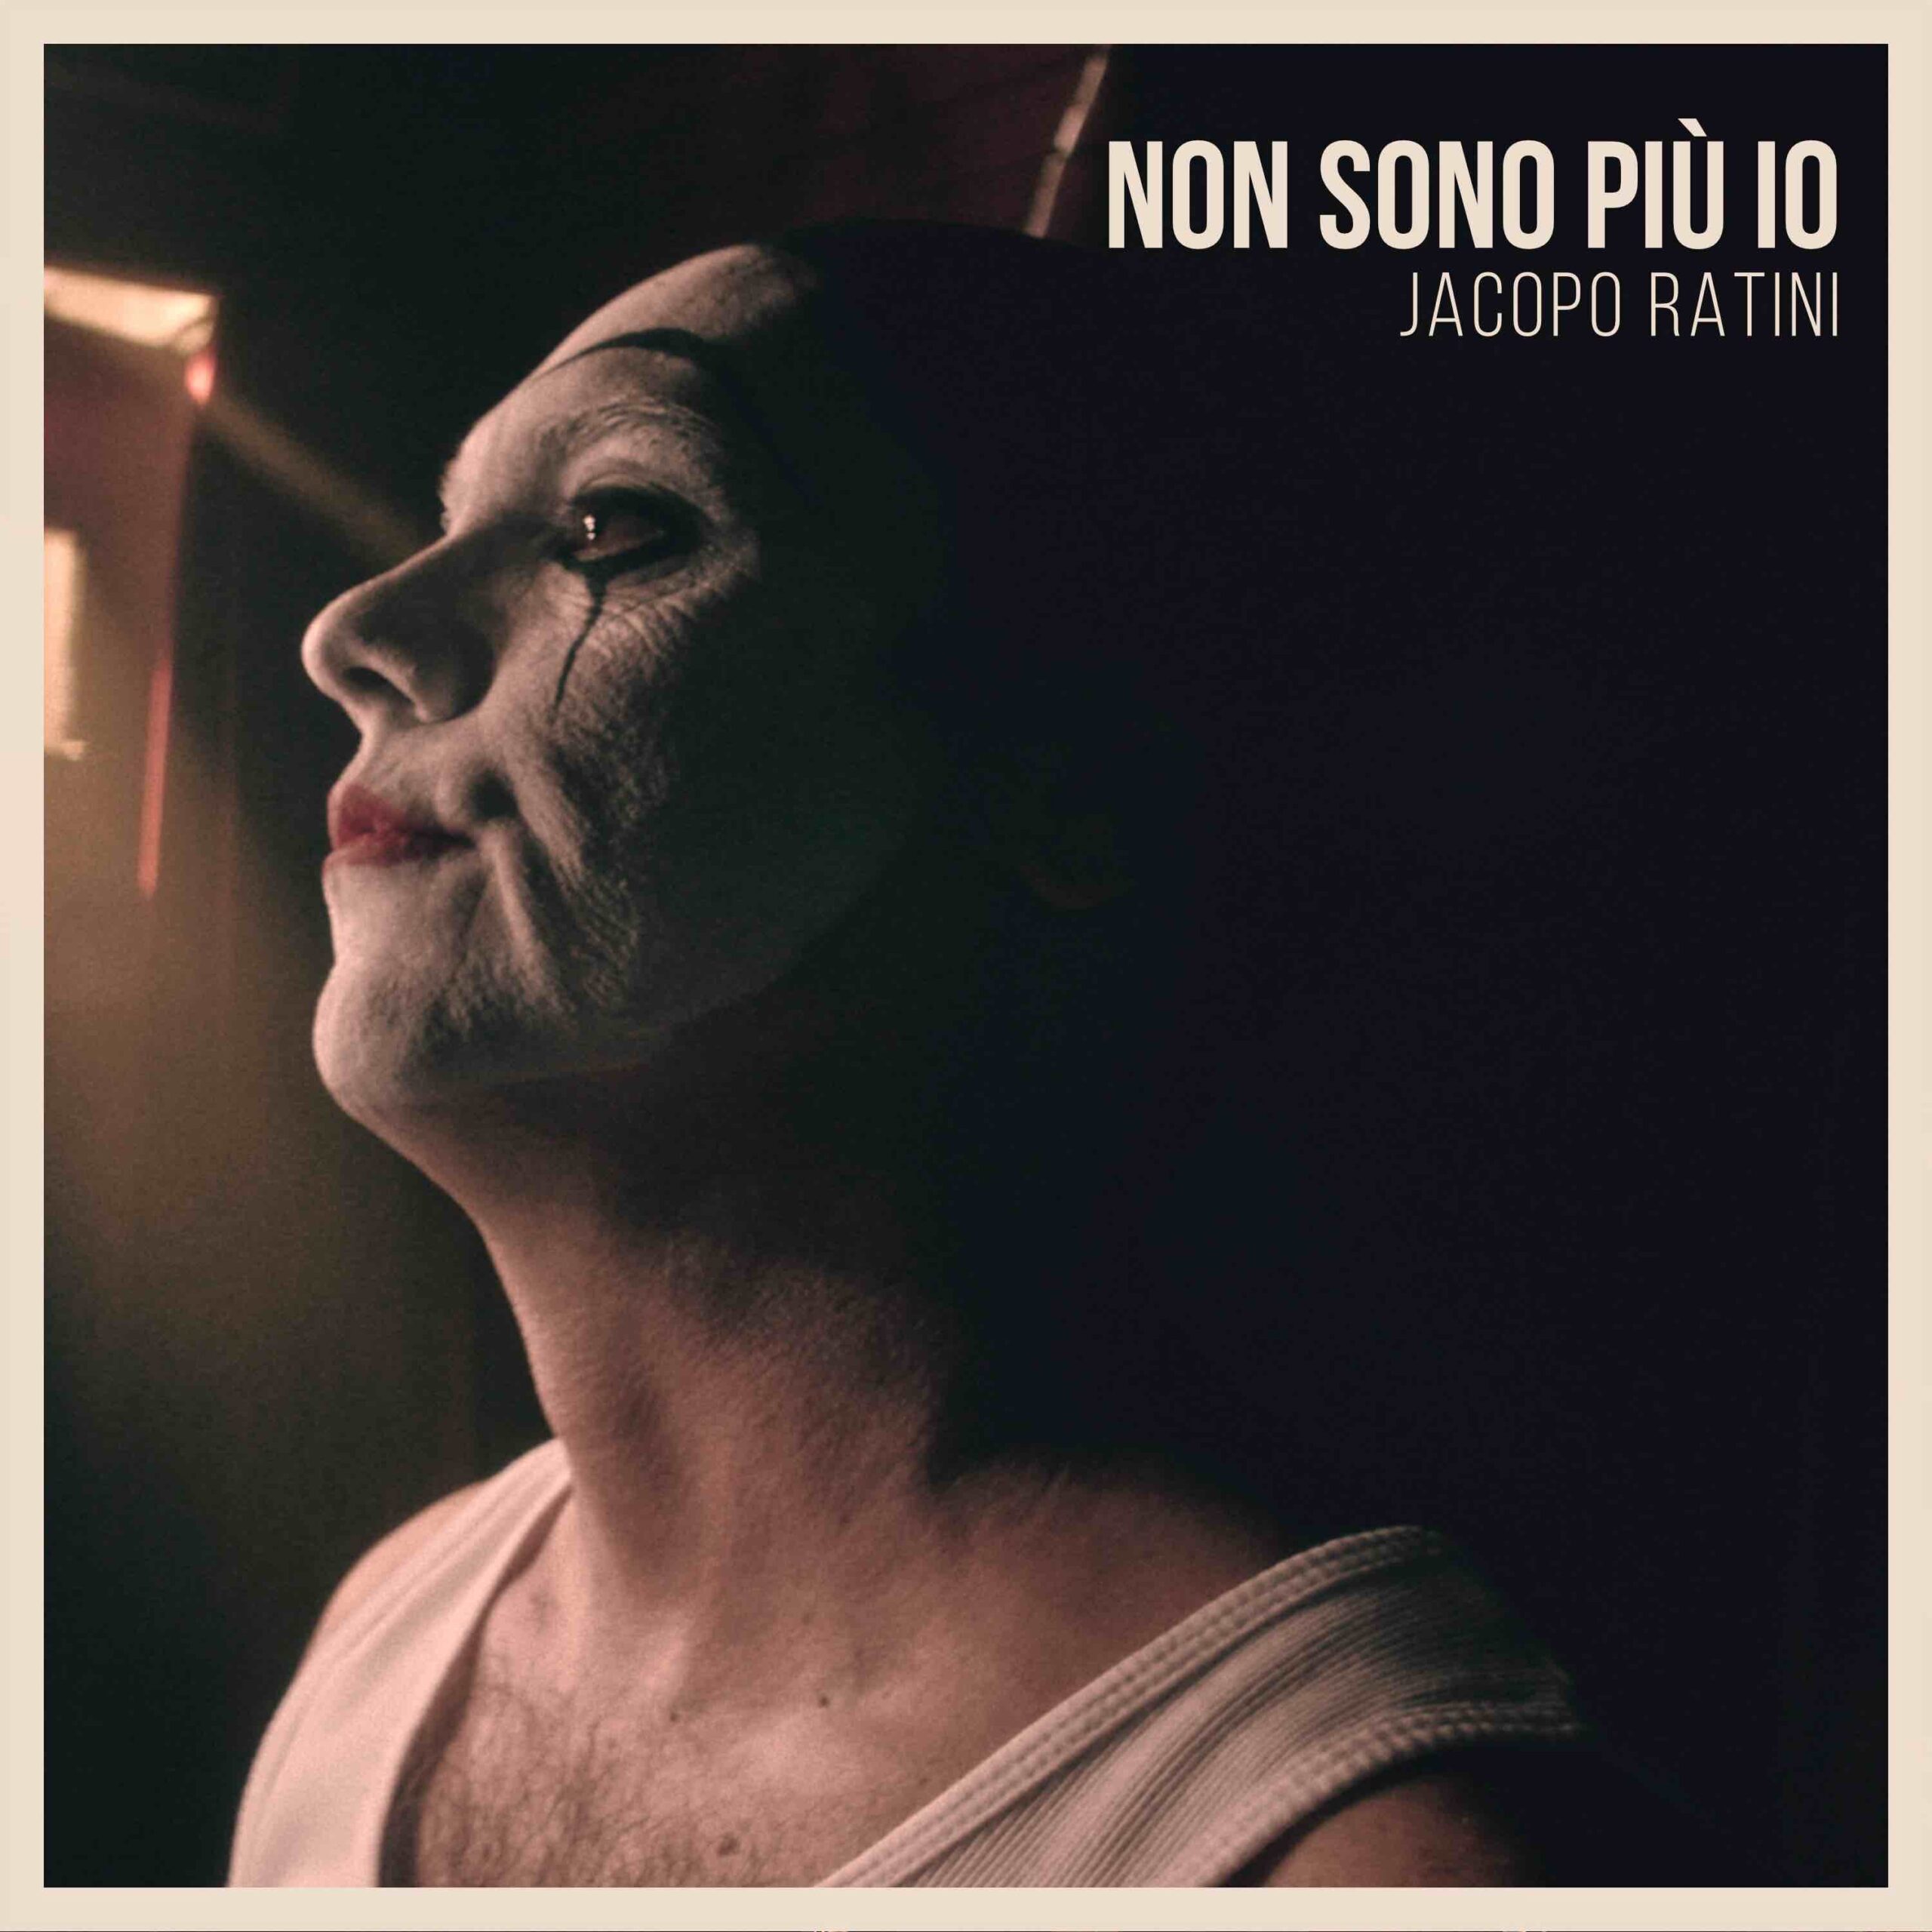 Non sono più io è il nuovo singolo di Jacopo Ratini